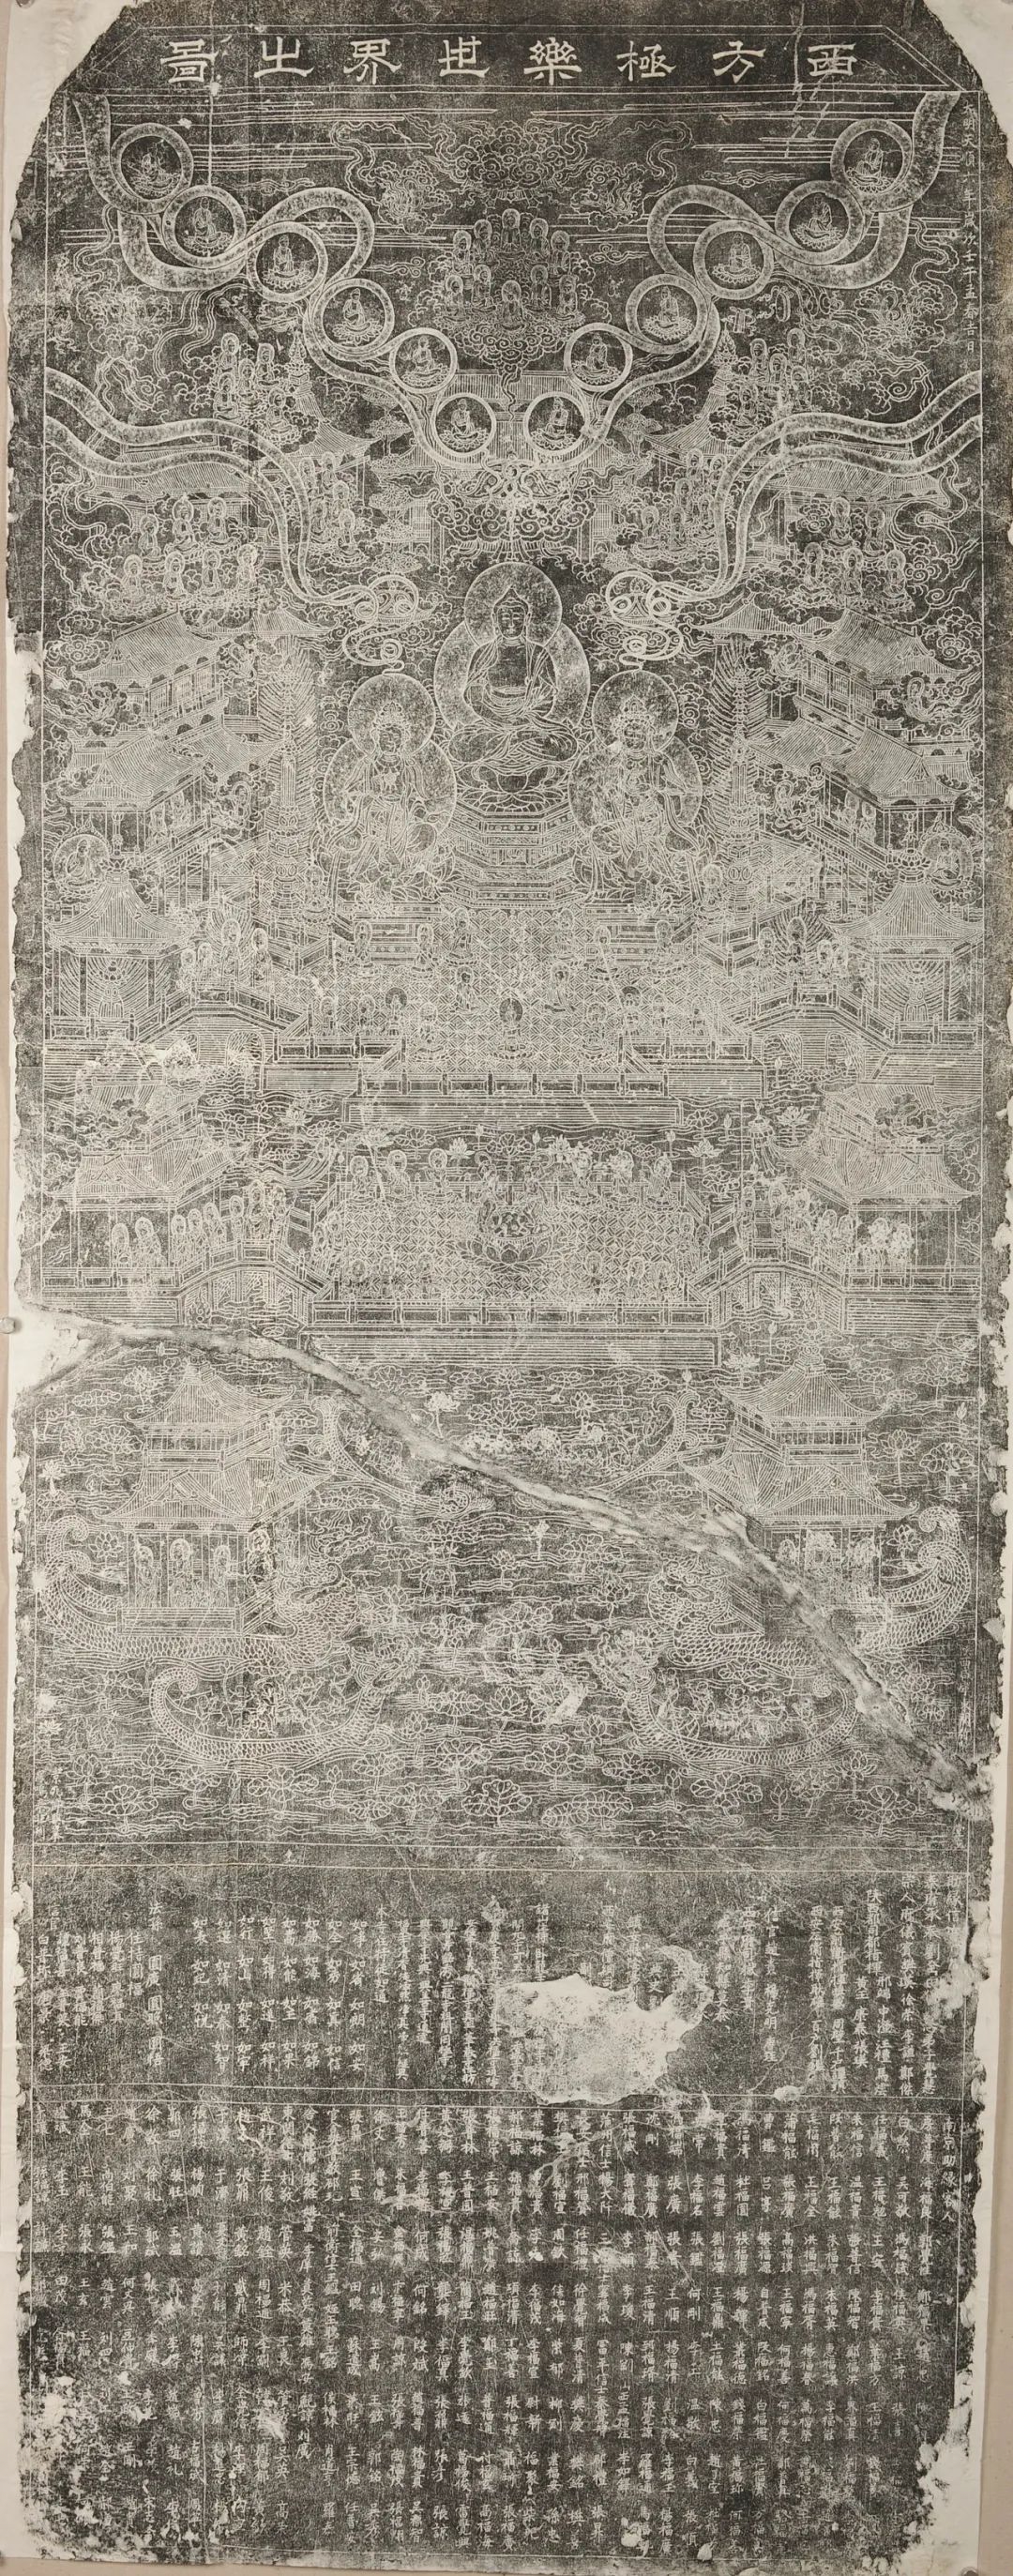 西方极乐世界之图 明天顺六年（1462） 傅兴摹，秦旺 刊